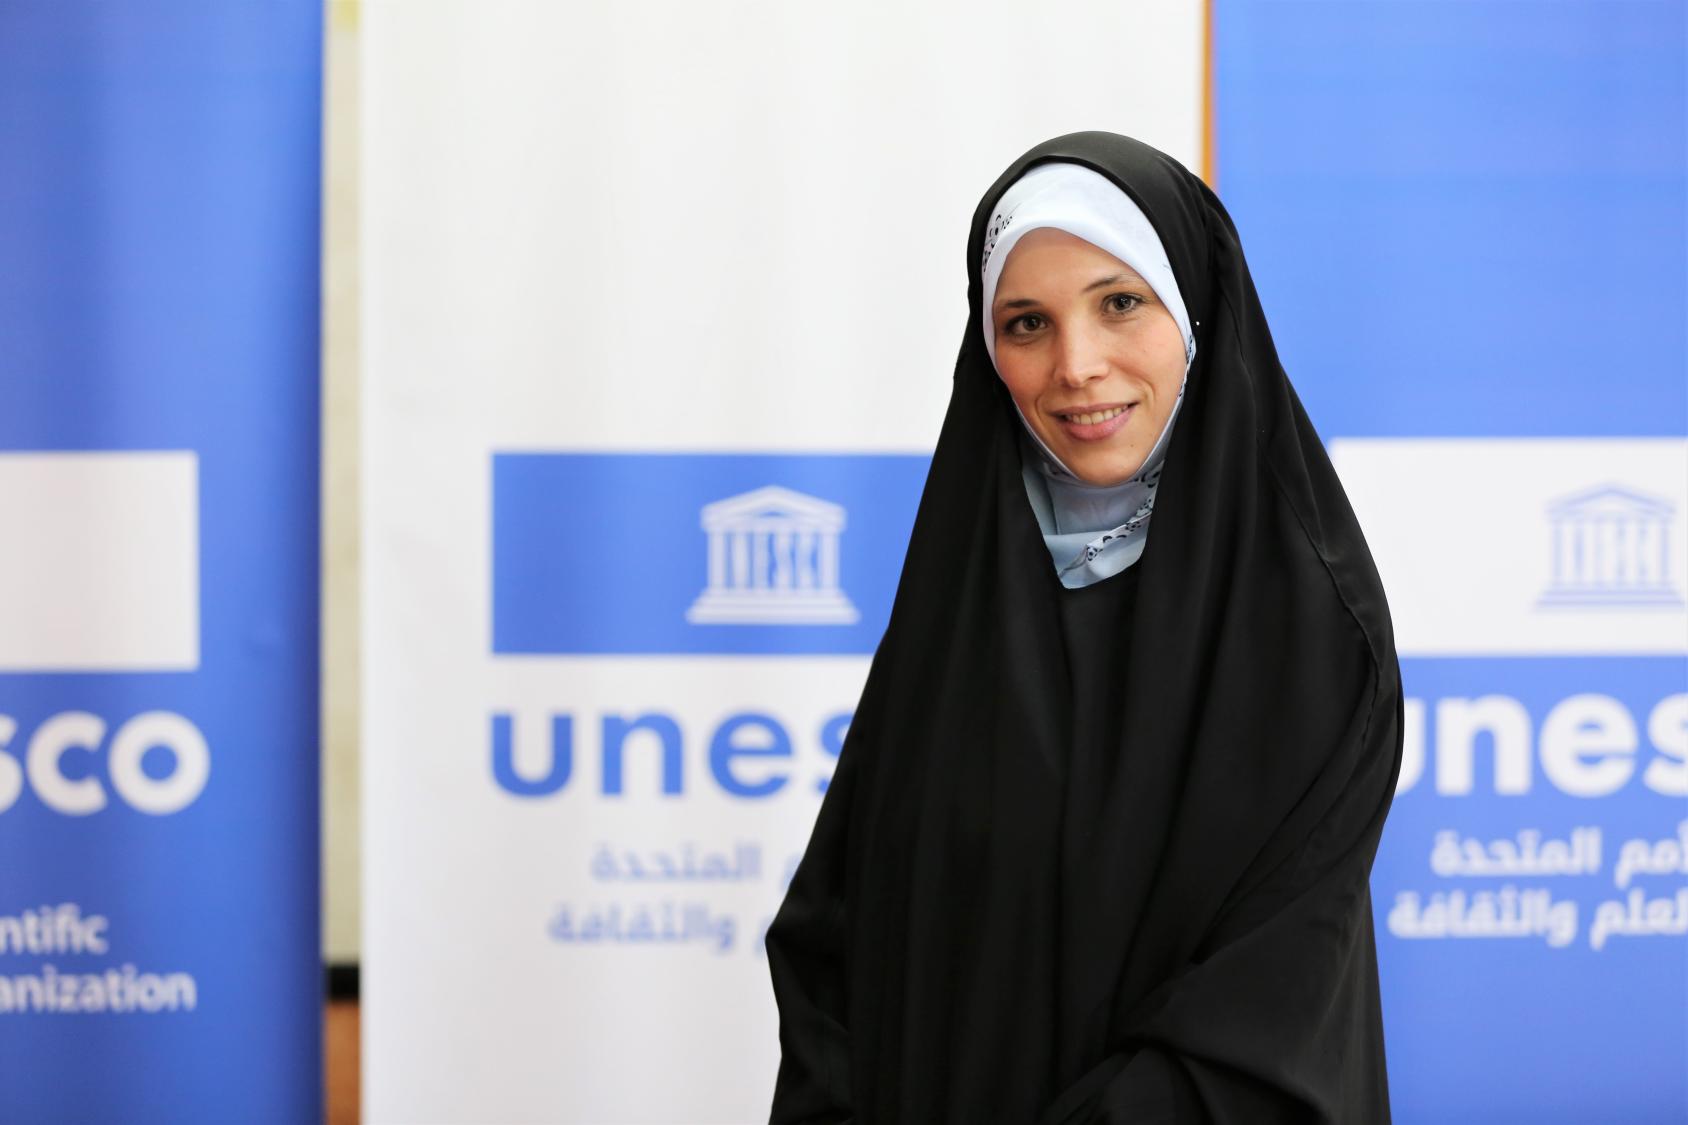 一名年轻女子戴着覆盖身体和头部的黑色长面纱，对着镜头摆出微笑的姿势。背景是蓝色和白色的大海报，在该组织的标志下有 "教科文组织 "的字样。